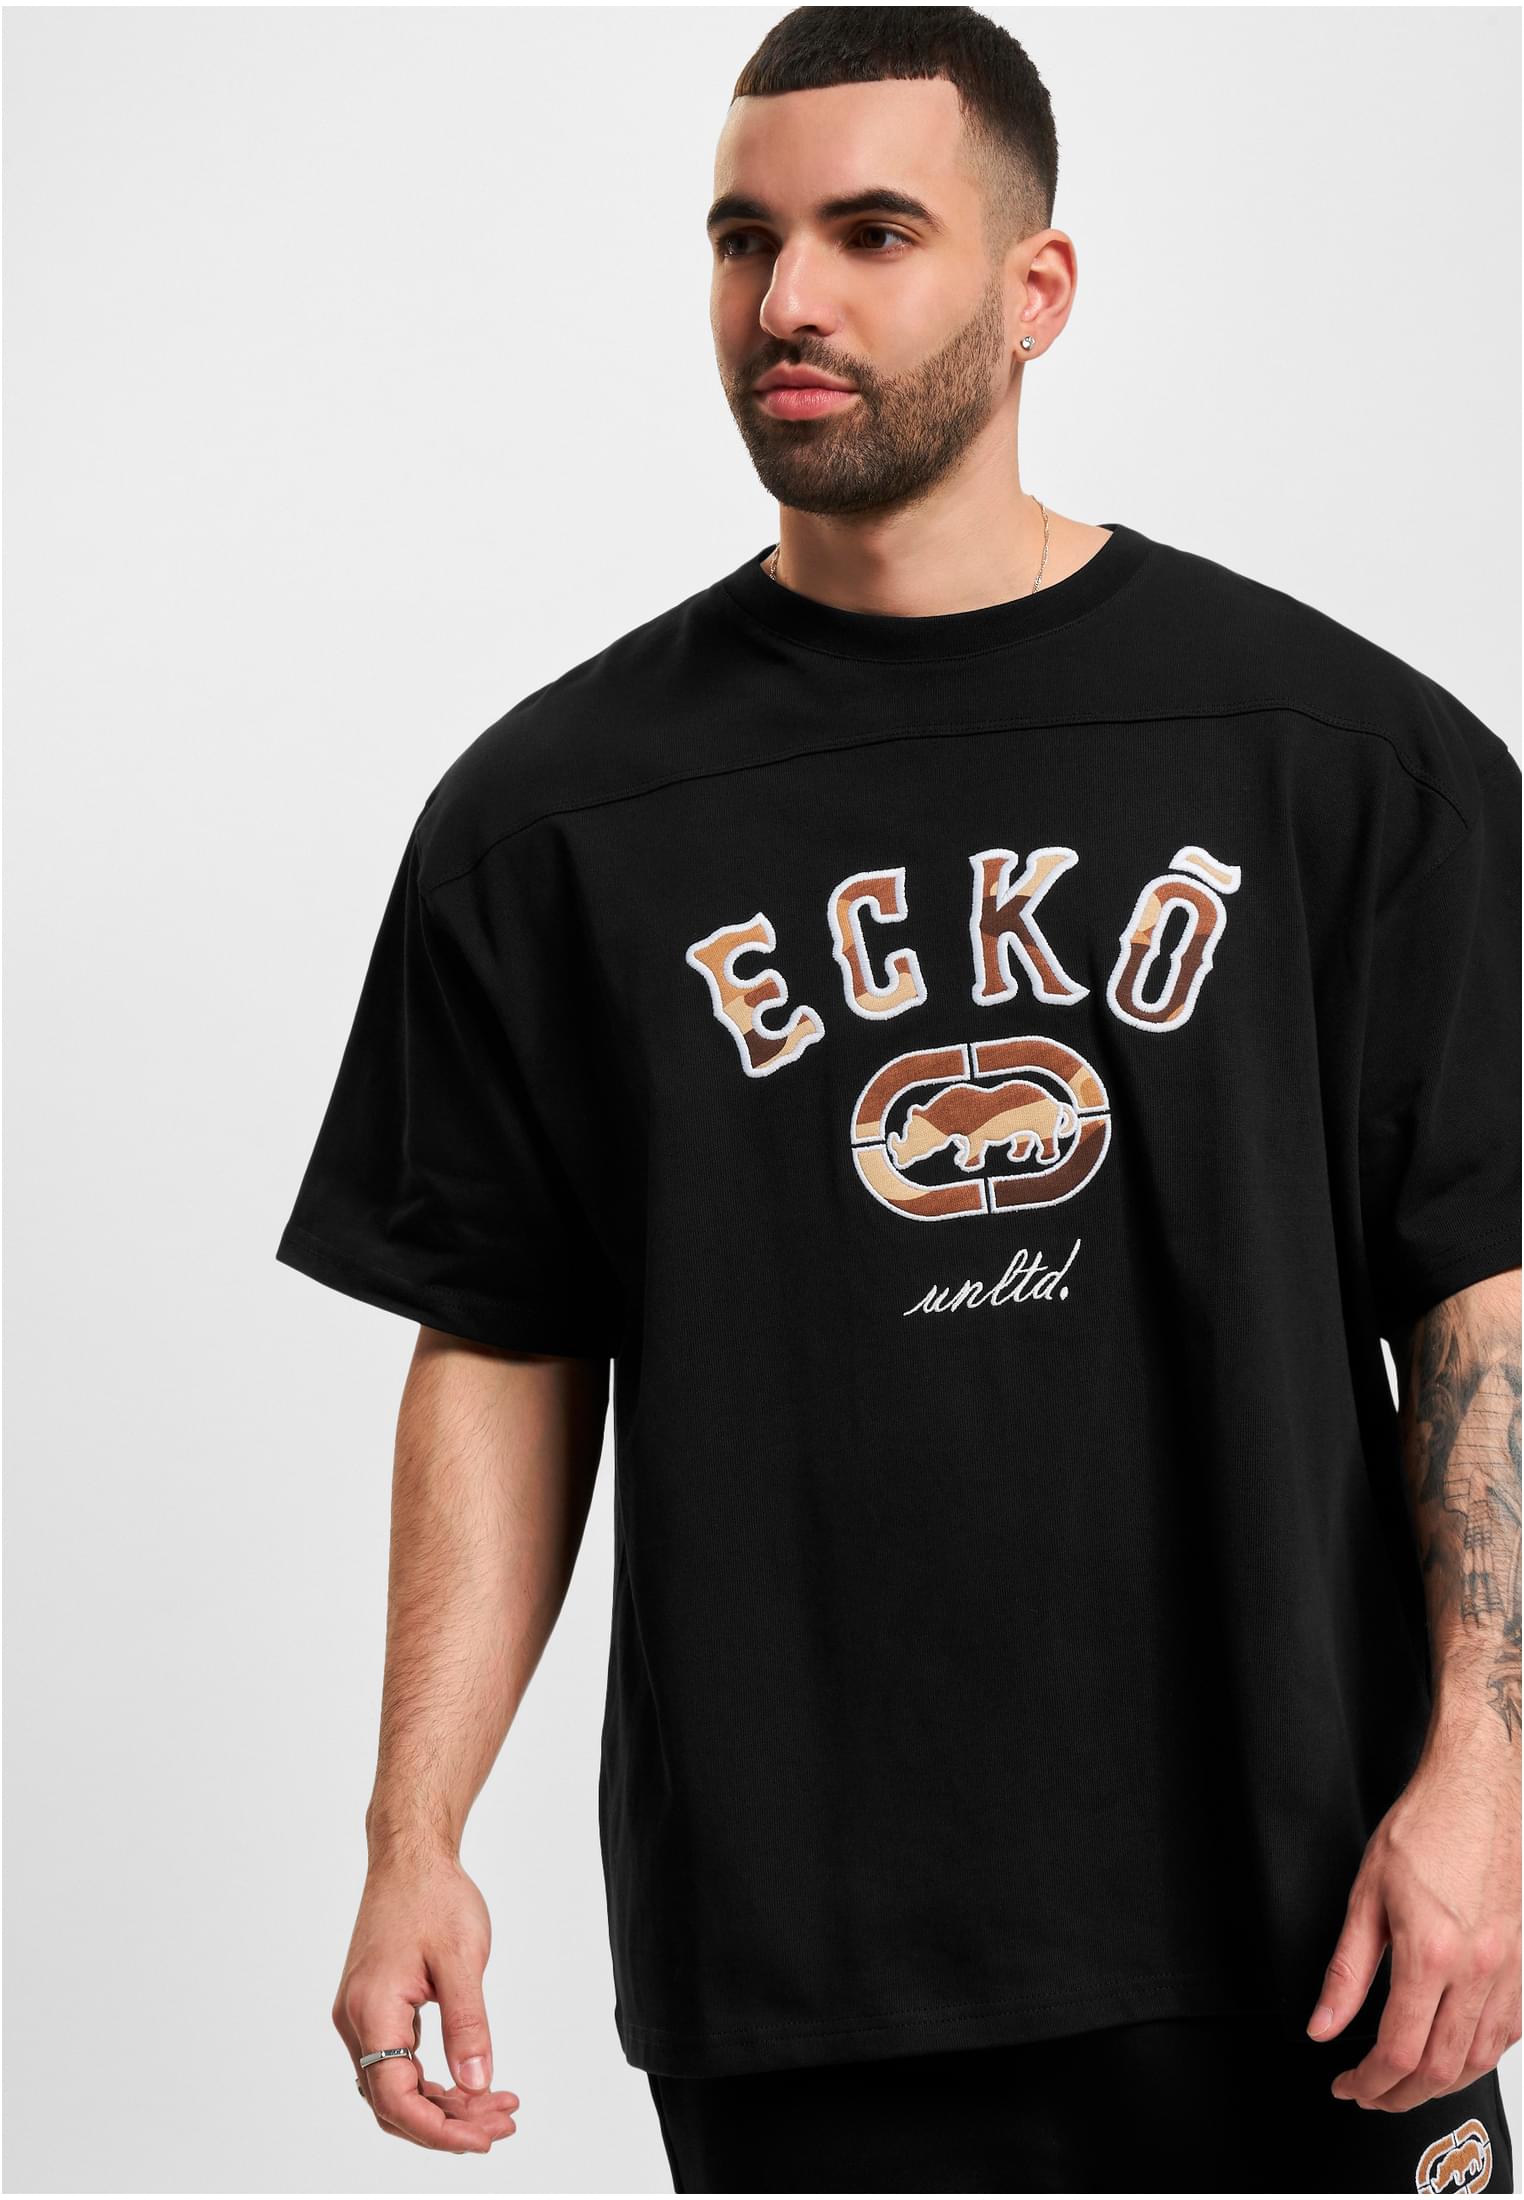 Společnost Ecko Unltd. Camouflage T-shirt Boxy Cut